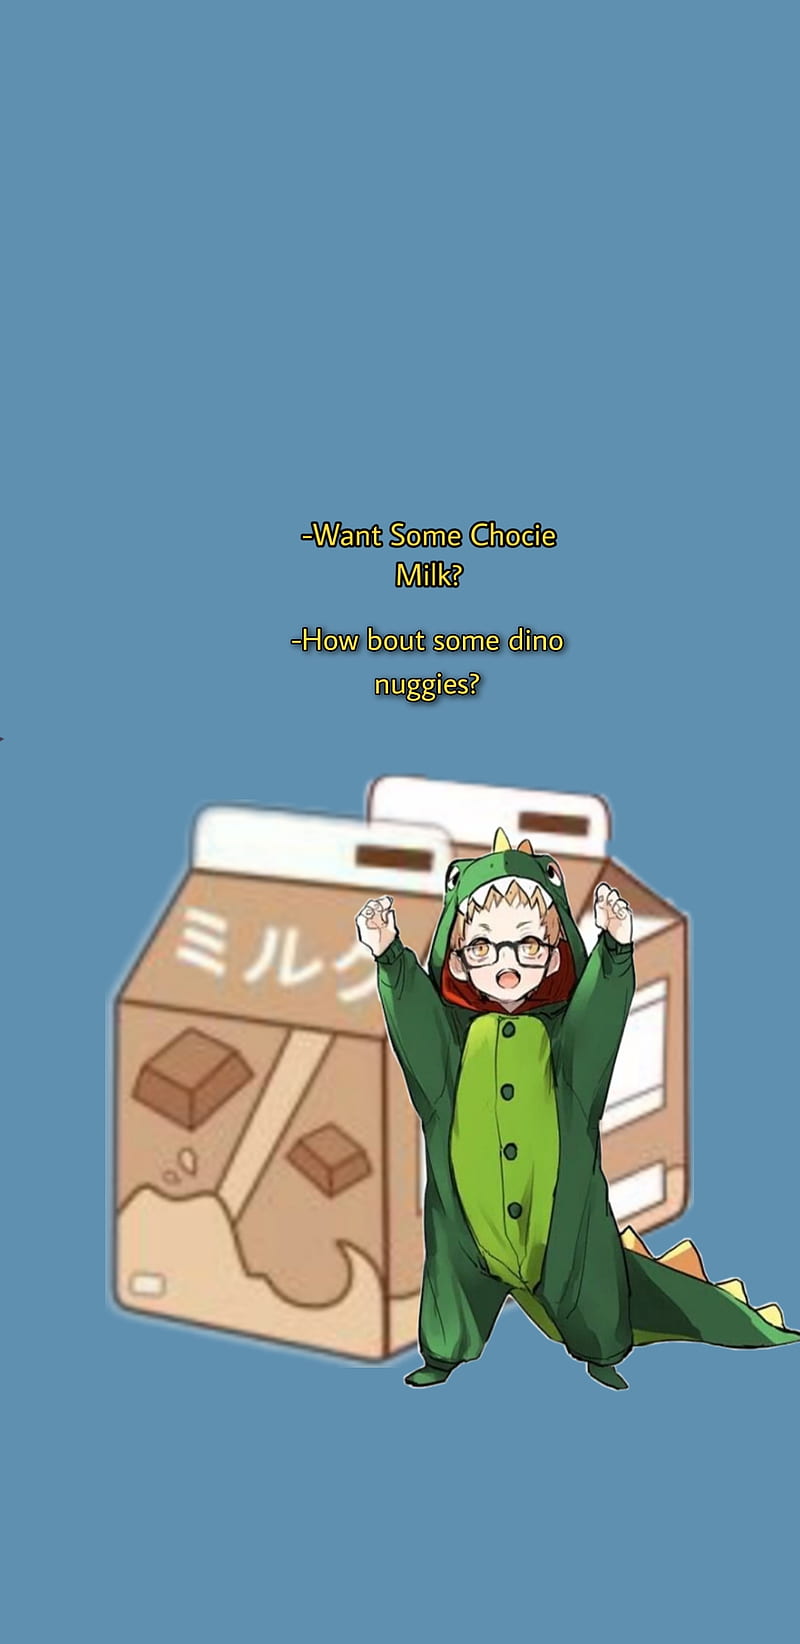 Chocky Dino, chocky milk, chocolate, dino nuggies, dinosaur, haikyuu, milk, nuggets, tsukishima, HD phone wallpaper